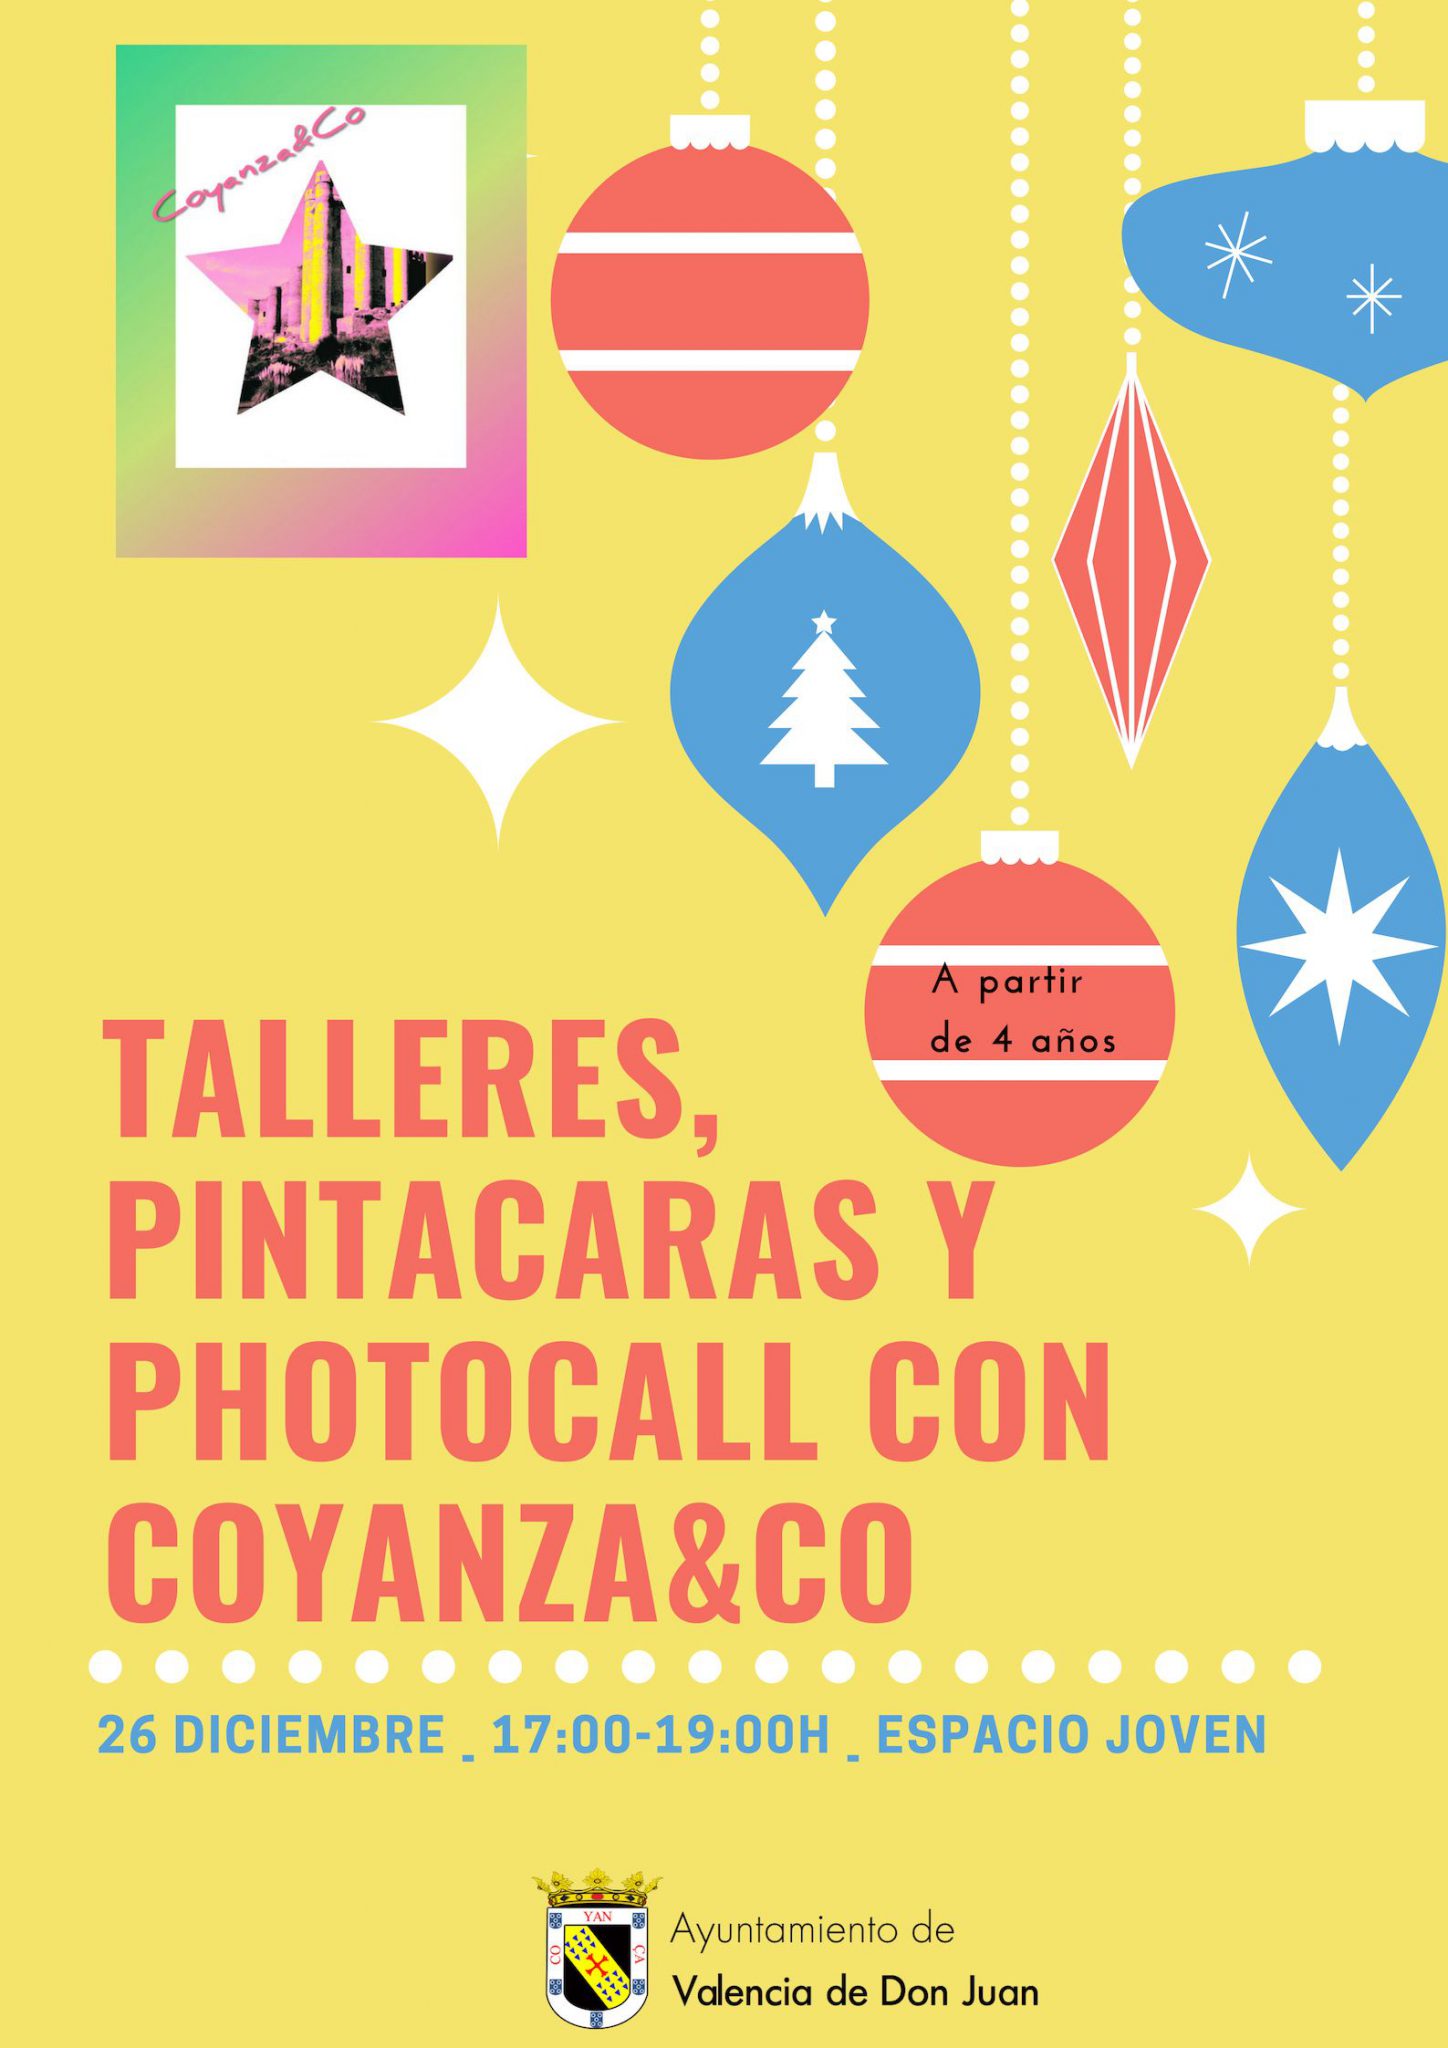 Talleres, Pintacaras y Photocall con Coyanza&Co